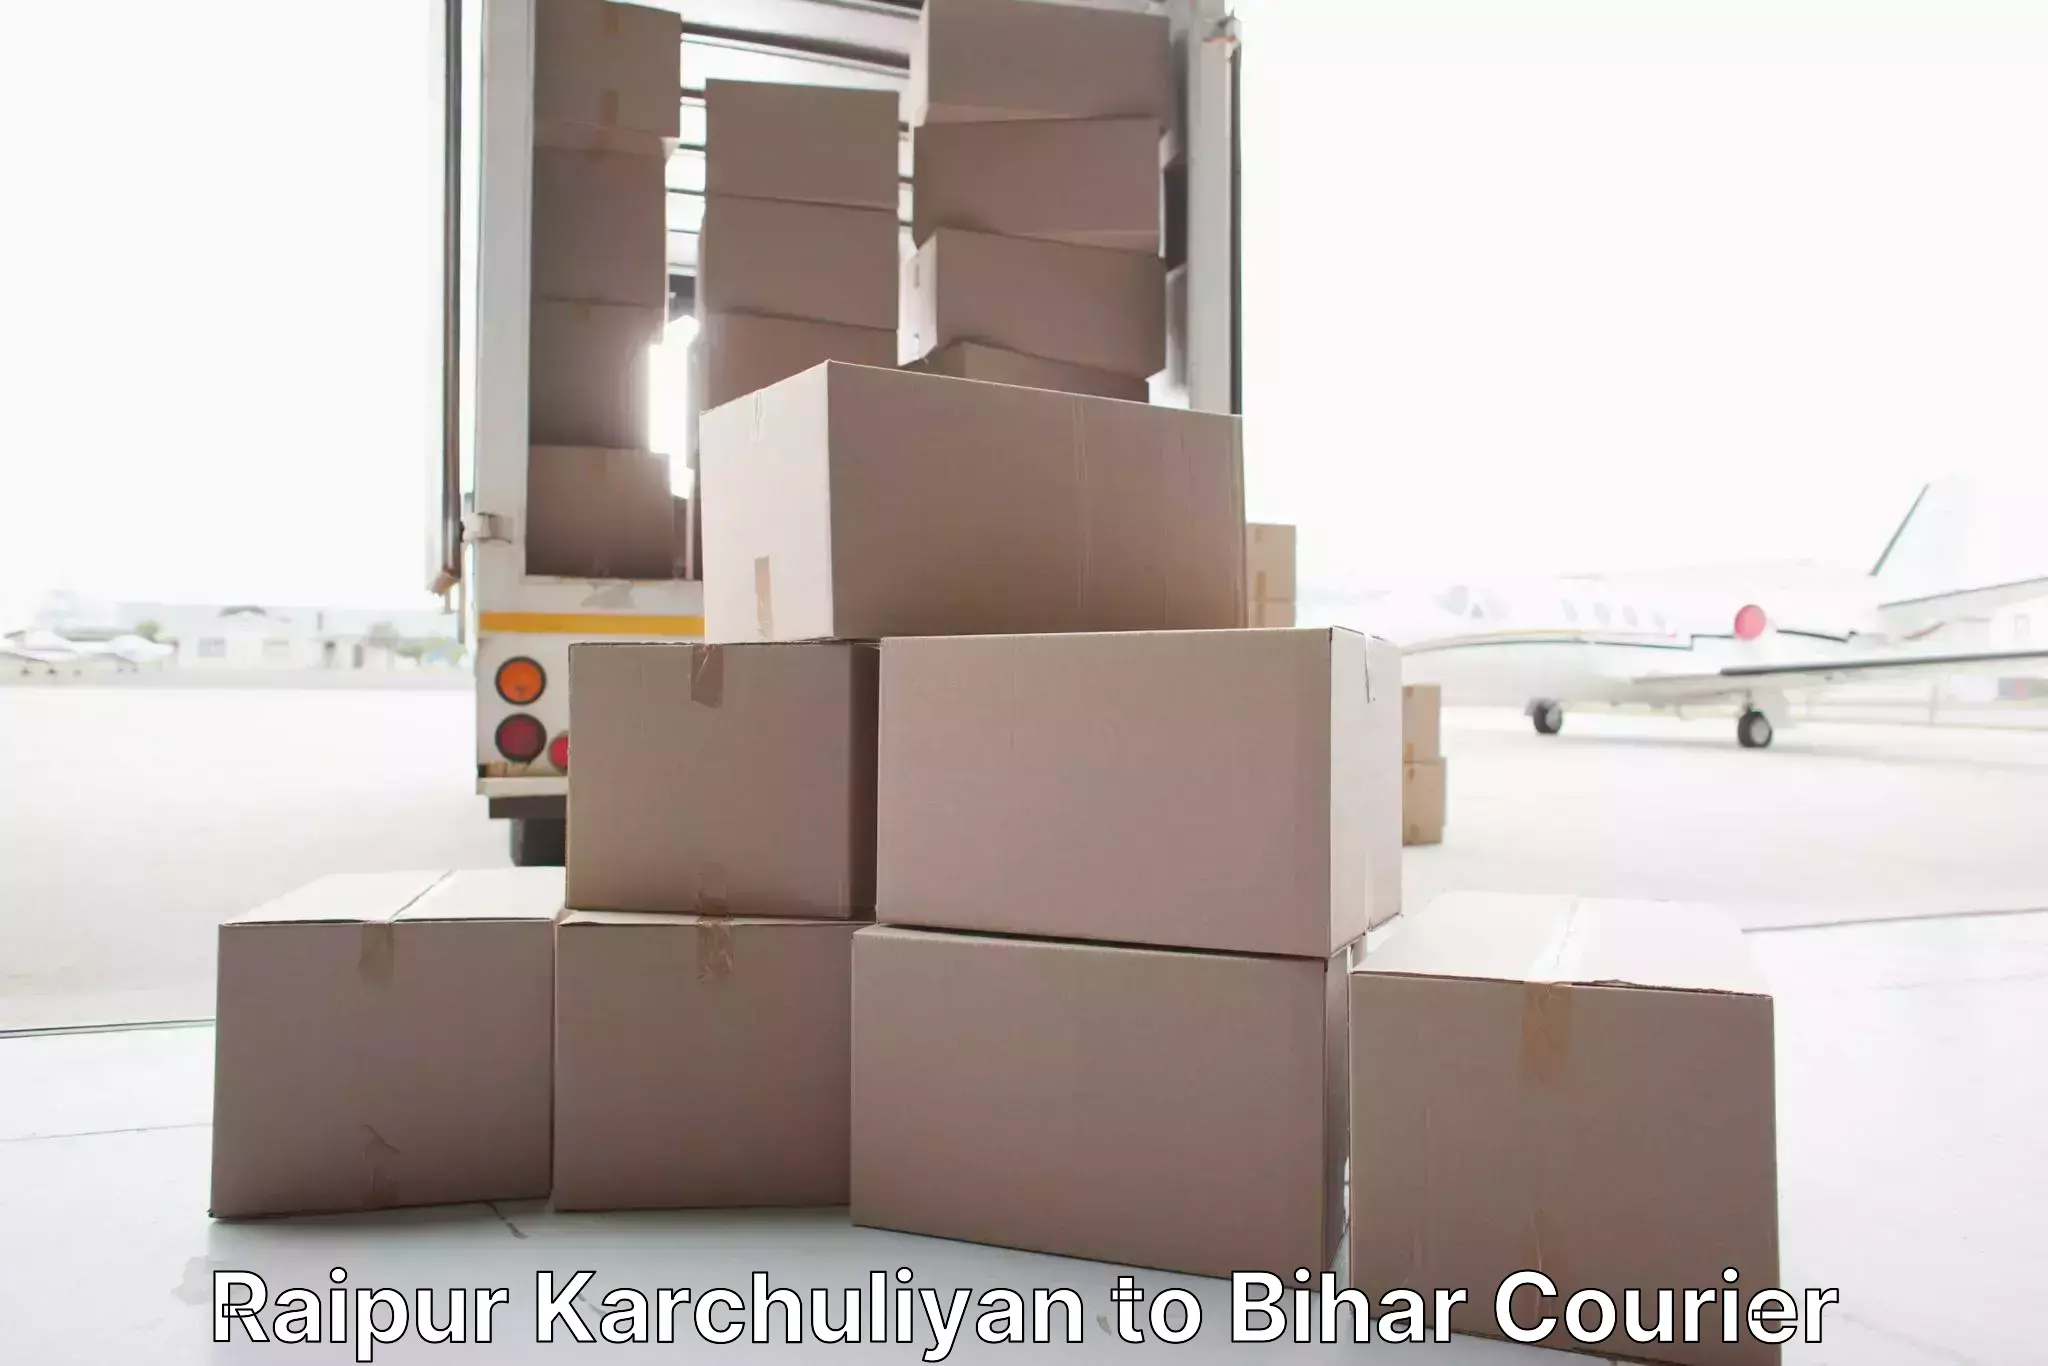 Stress-free furniture moving Raipur Karchuliyan to Sultanganj